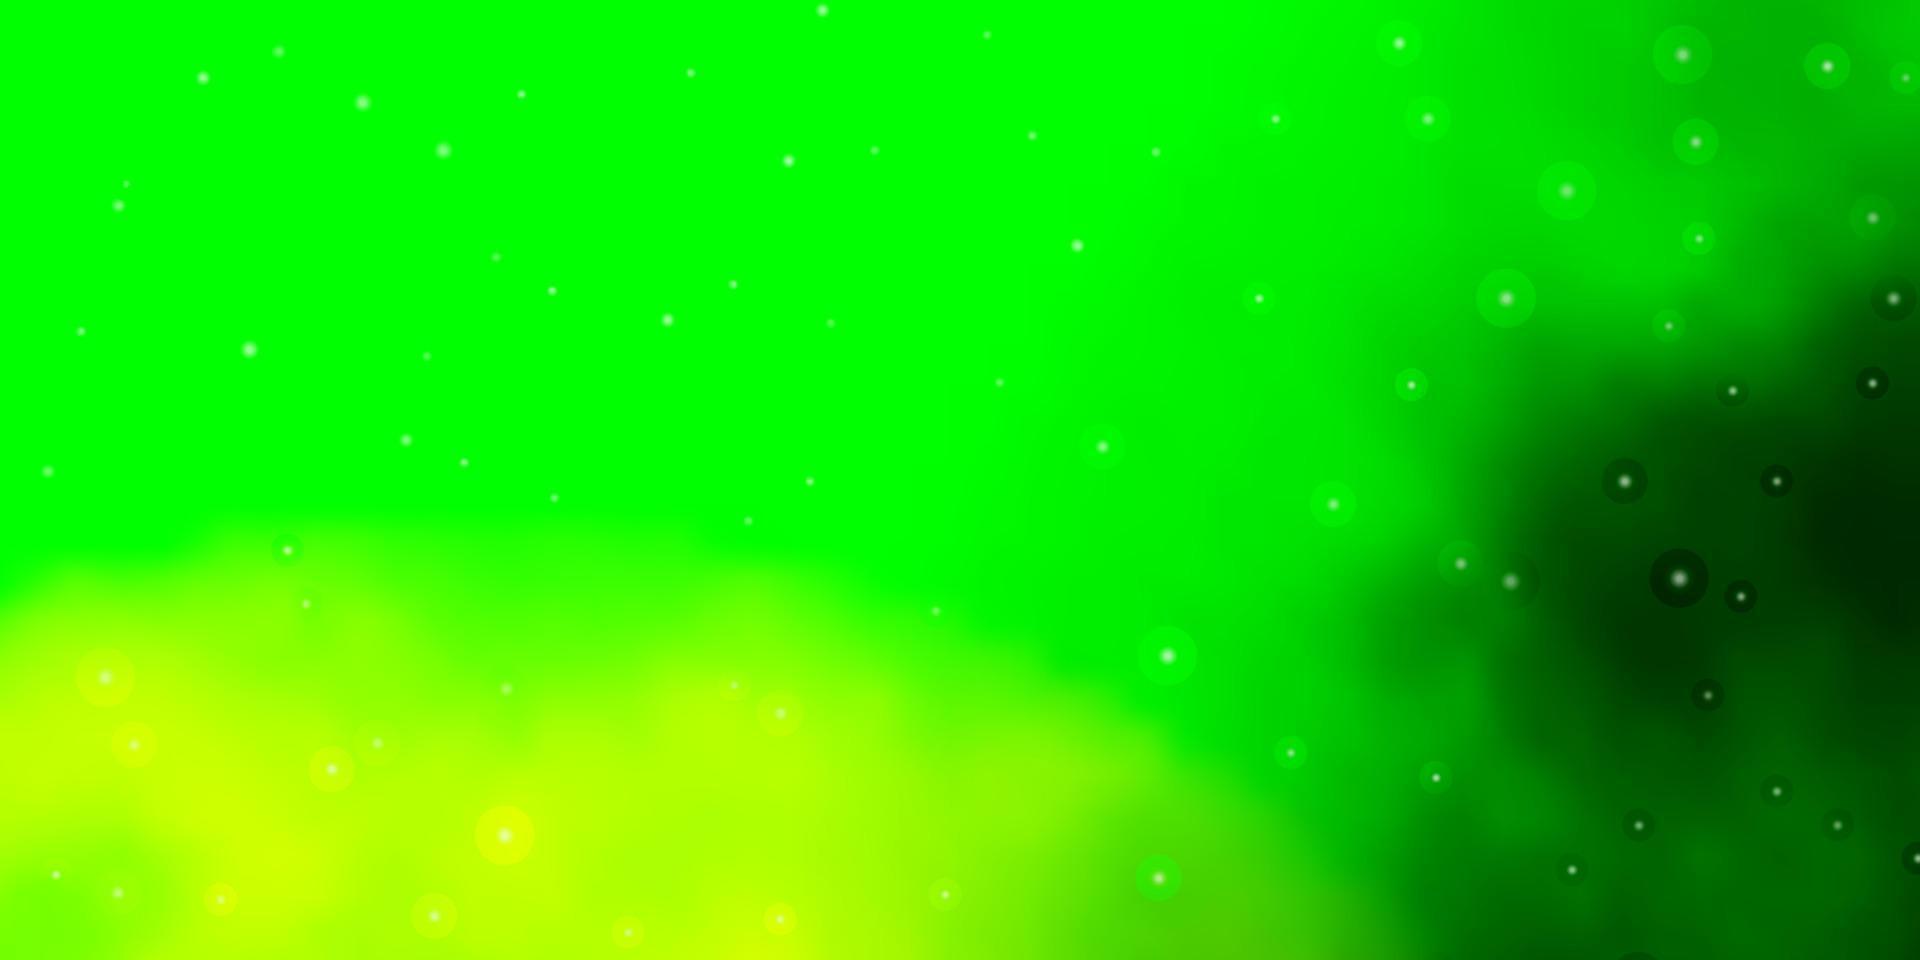 plantilla de vector verde claro con estrellas de neón.